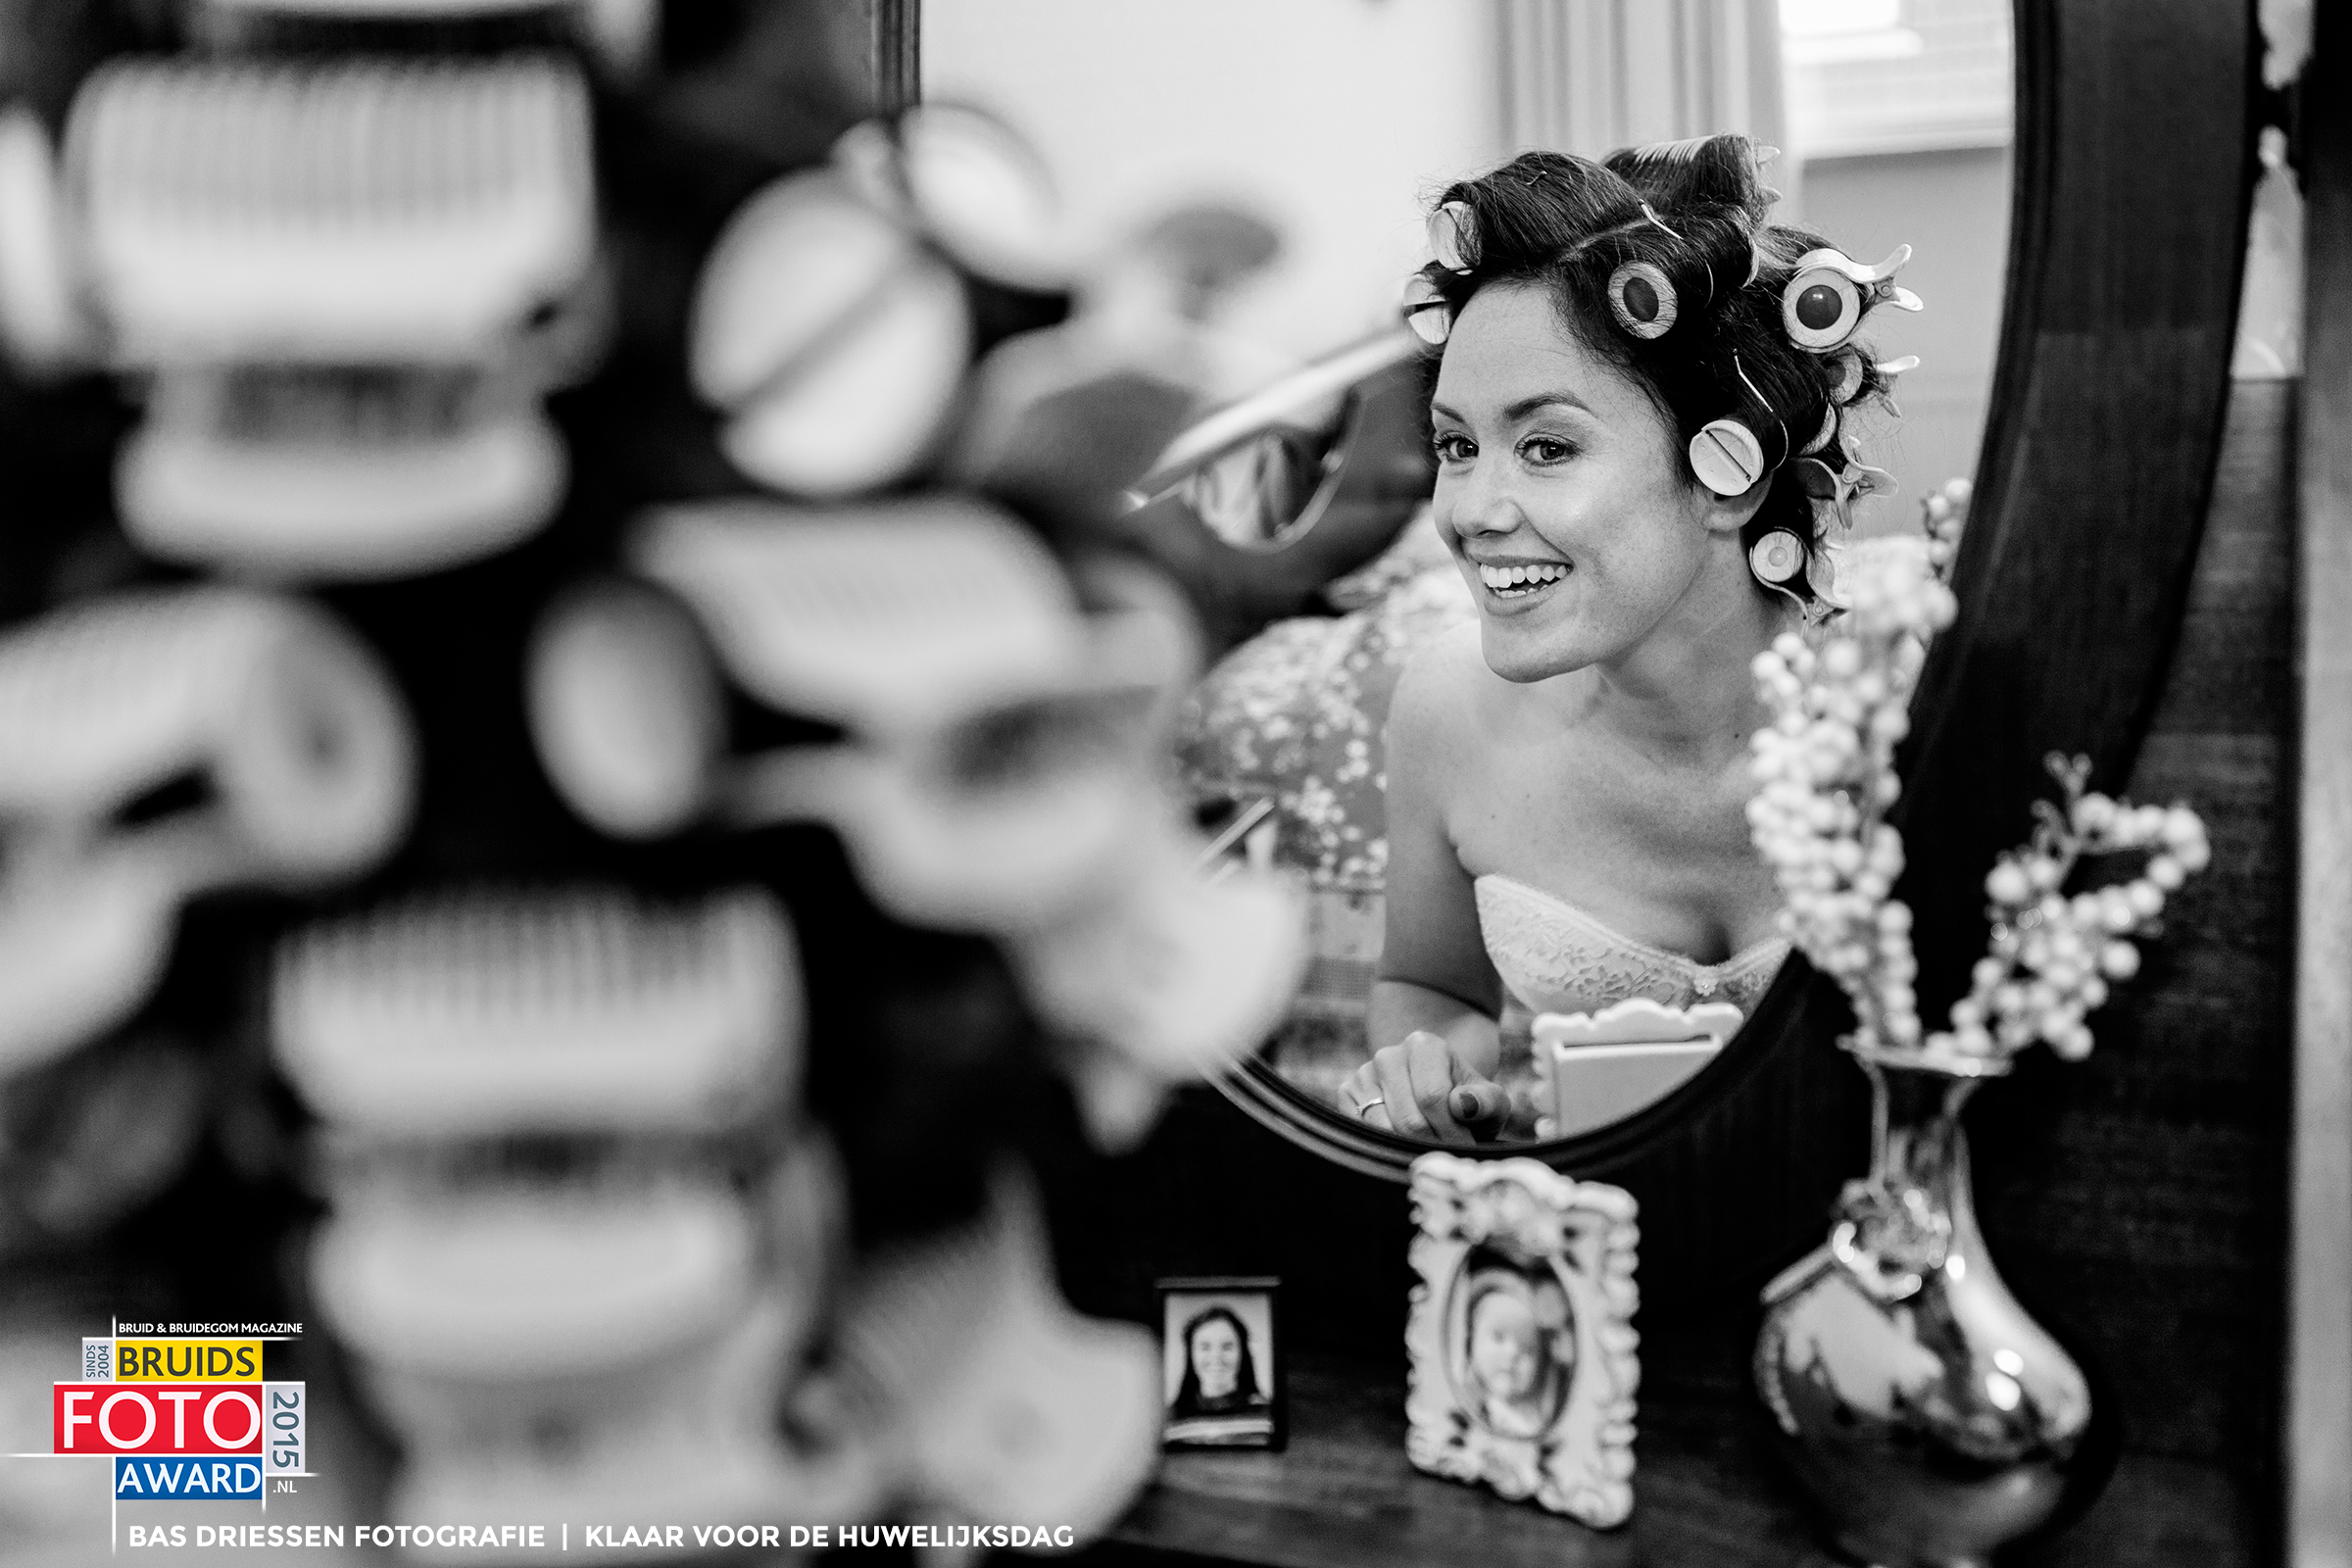 Bas-Driessen-Fotografie-Bruidsfoto-Award-2015-Klaar-voor-de-Huwelijksdag